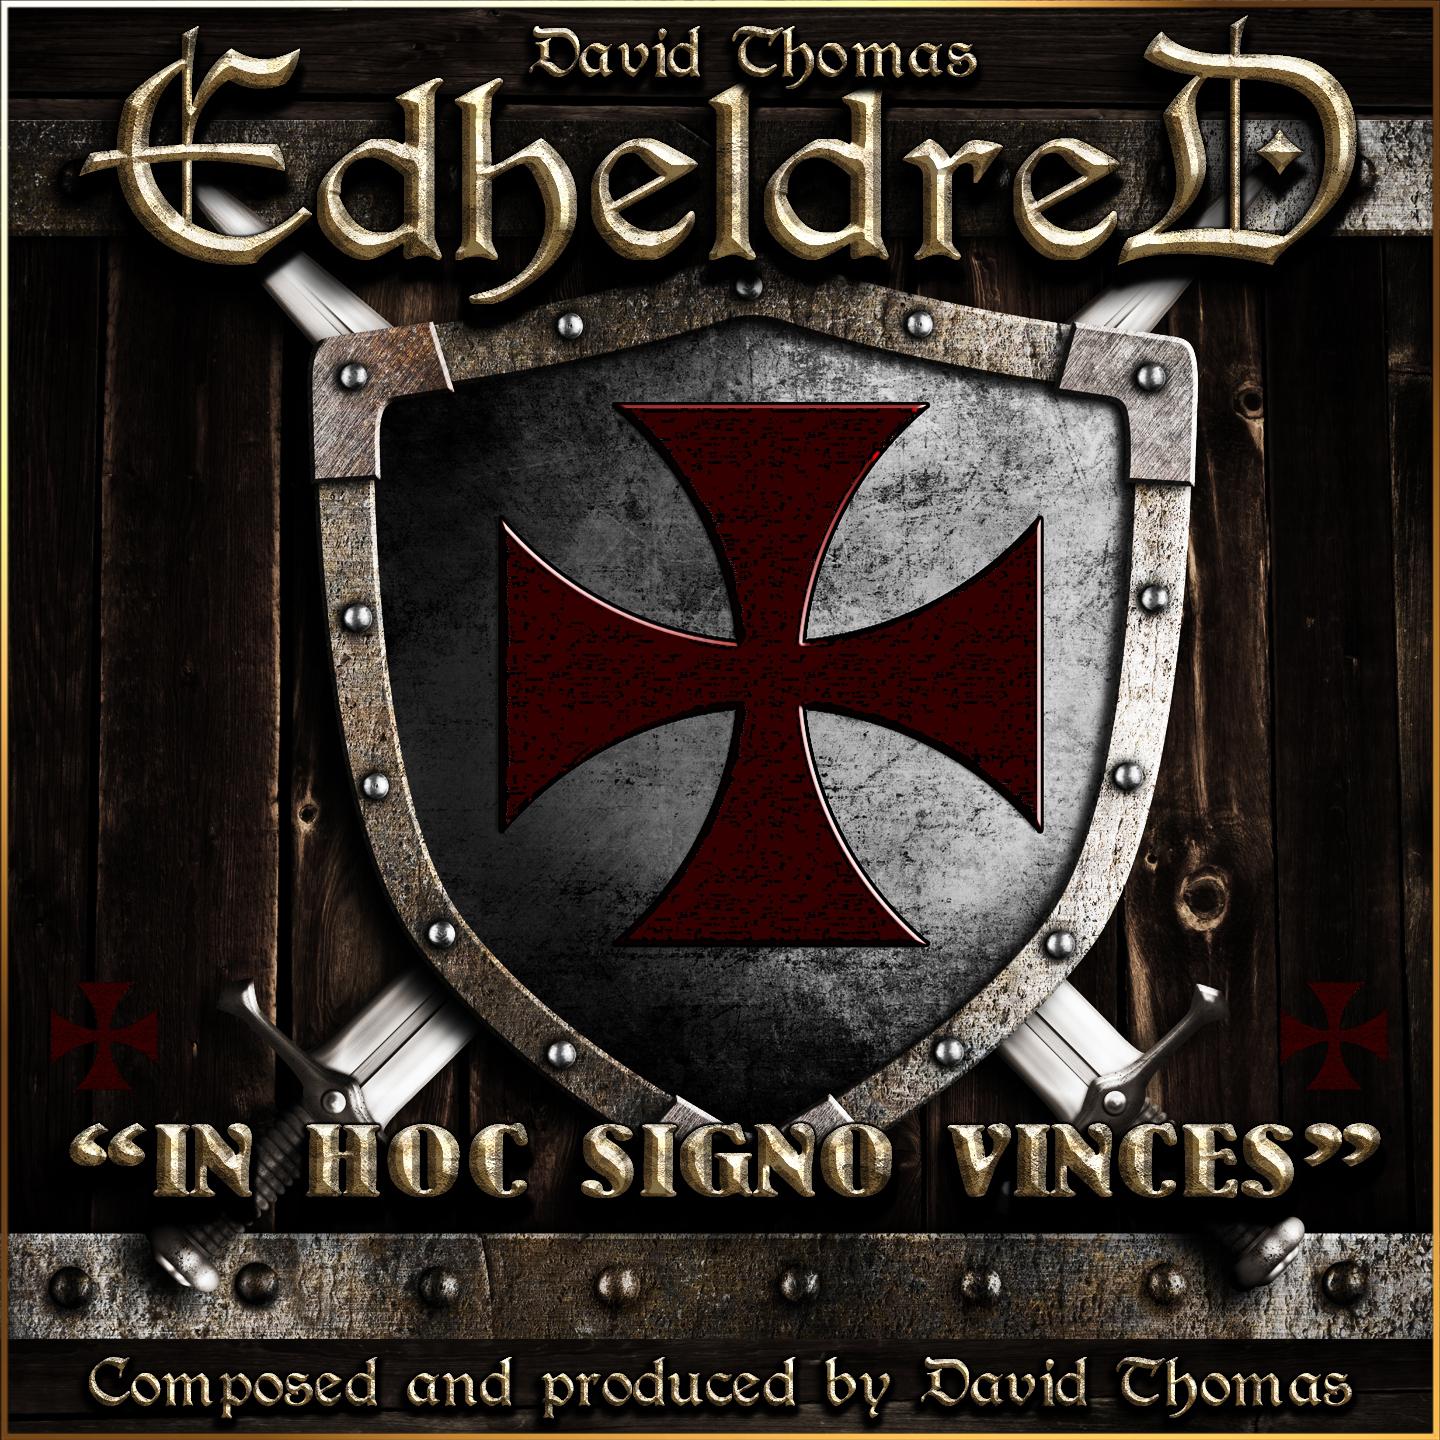 Edheldred (In Hoc Signo Vinces)